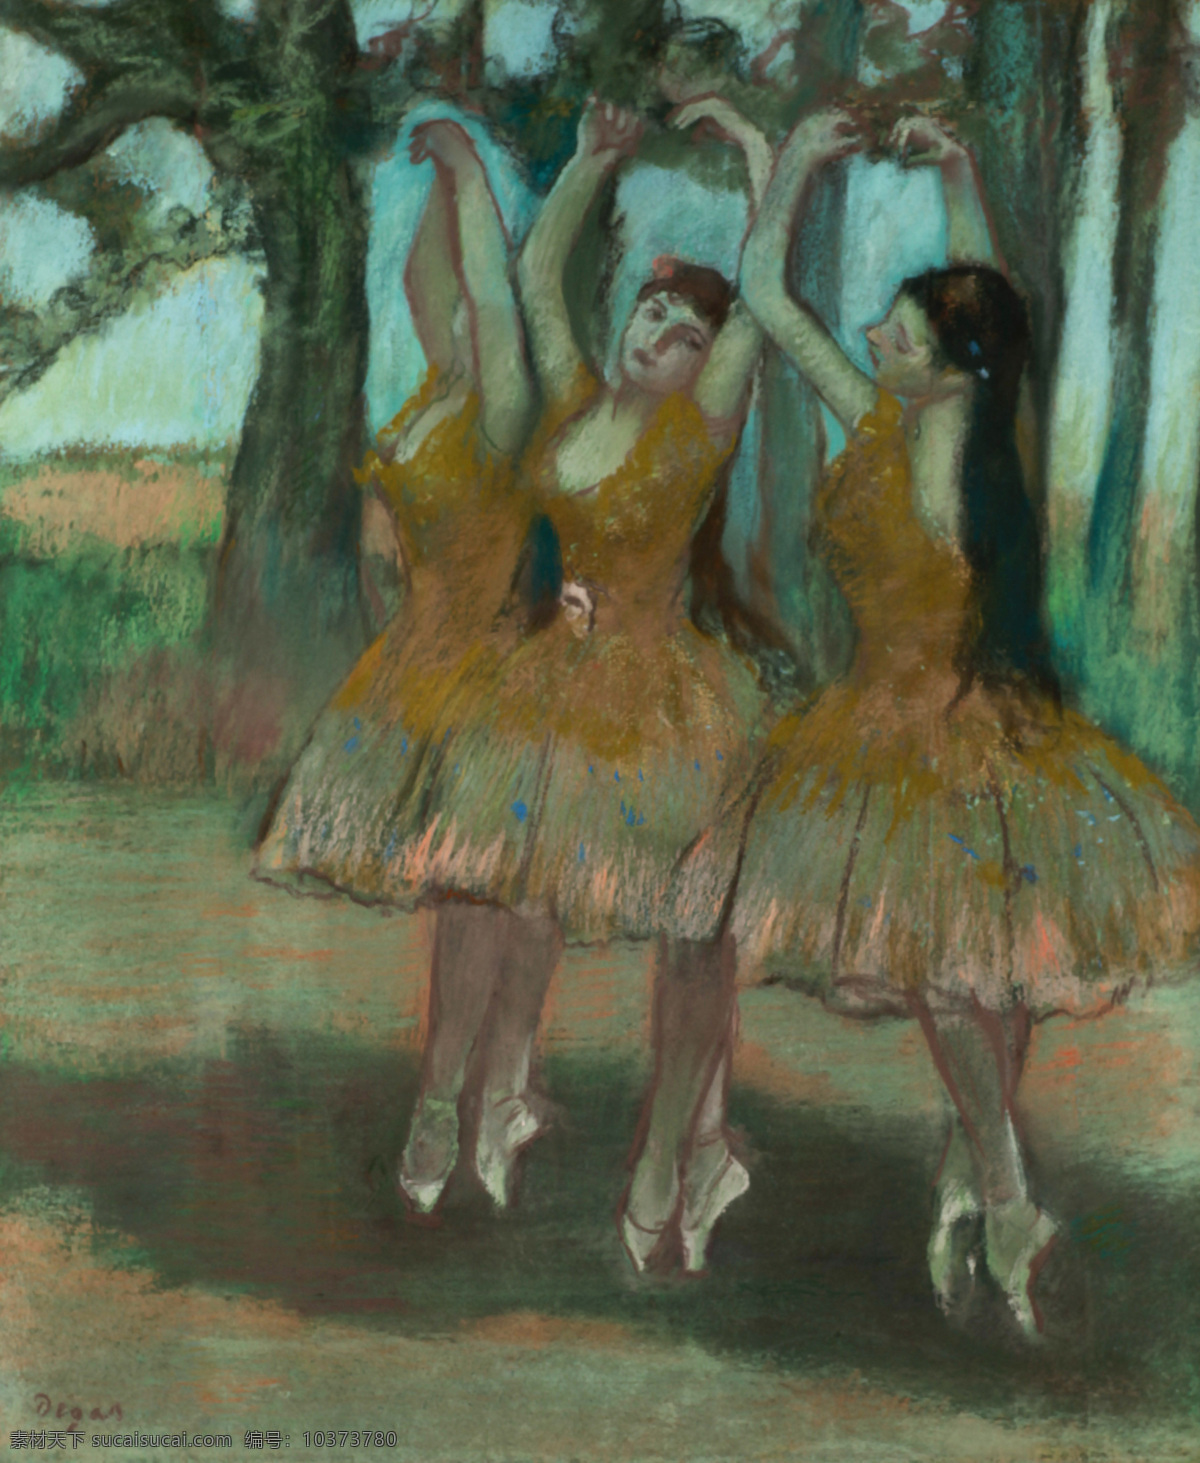 埃德加 德加 作品 西方古典油画 油画 油画作品 油画艺术 德加作品 舞蹈 芭蕾舞 舞女 跳舞 树 法国画家 流派艺术 印象派 私人收藏 绘画书法 文化艺术